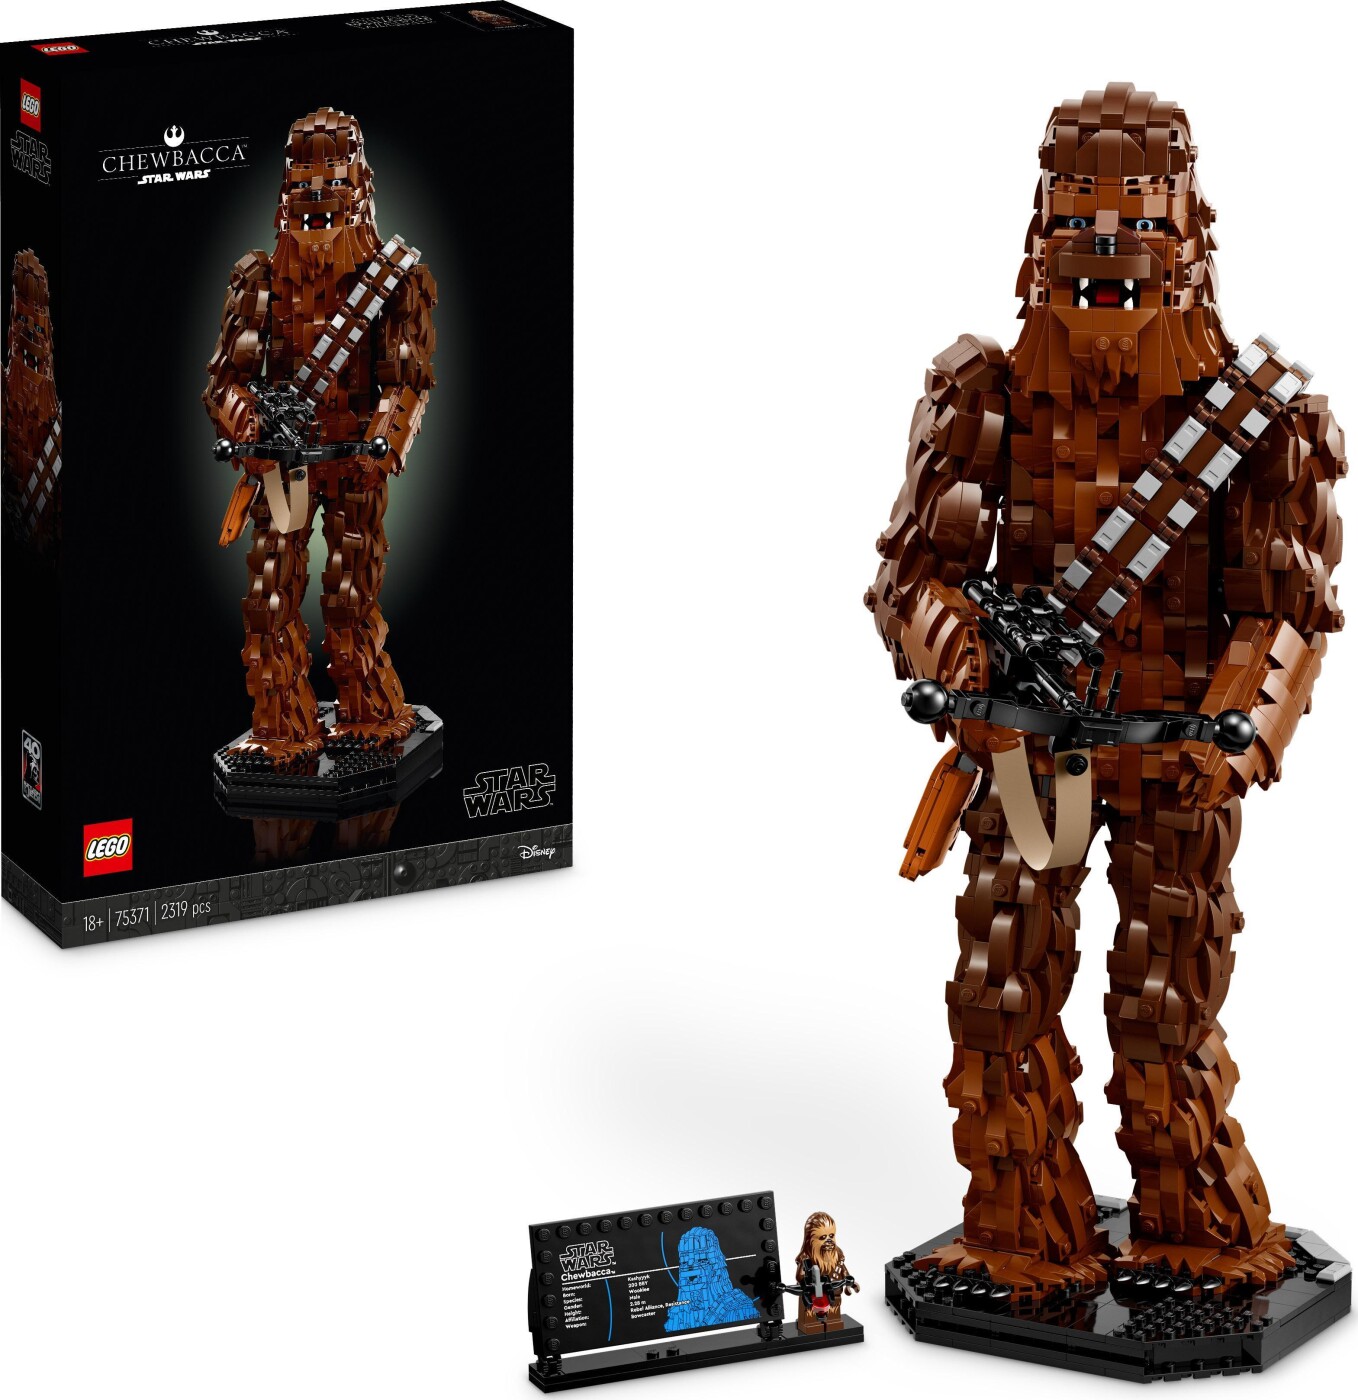 Billede af Lego Star Wars - Chewbacca - 75371